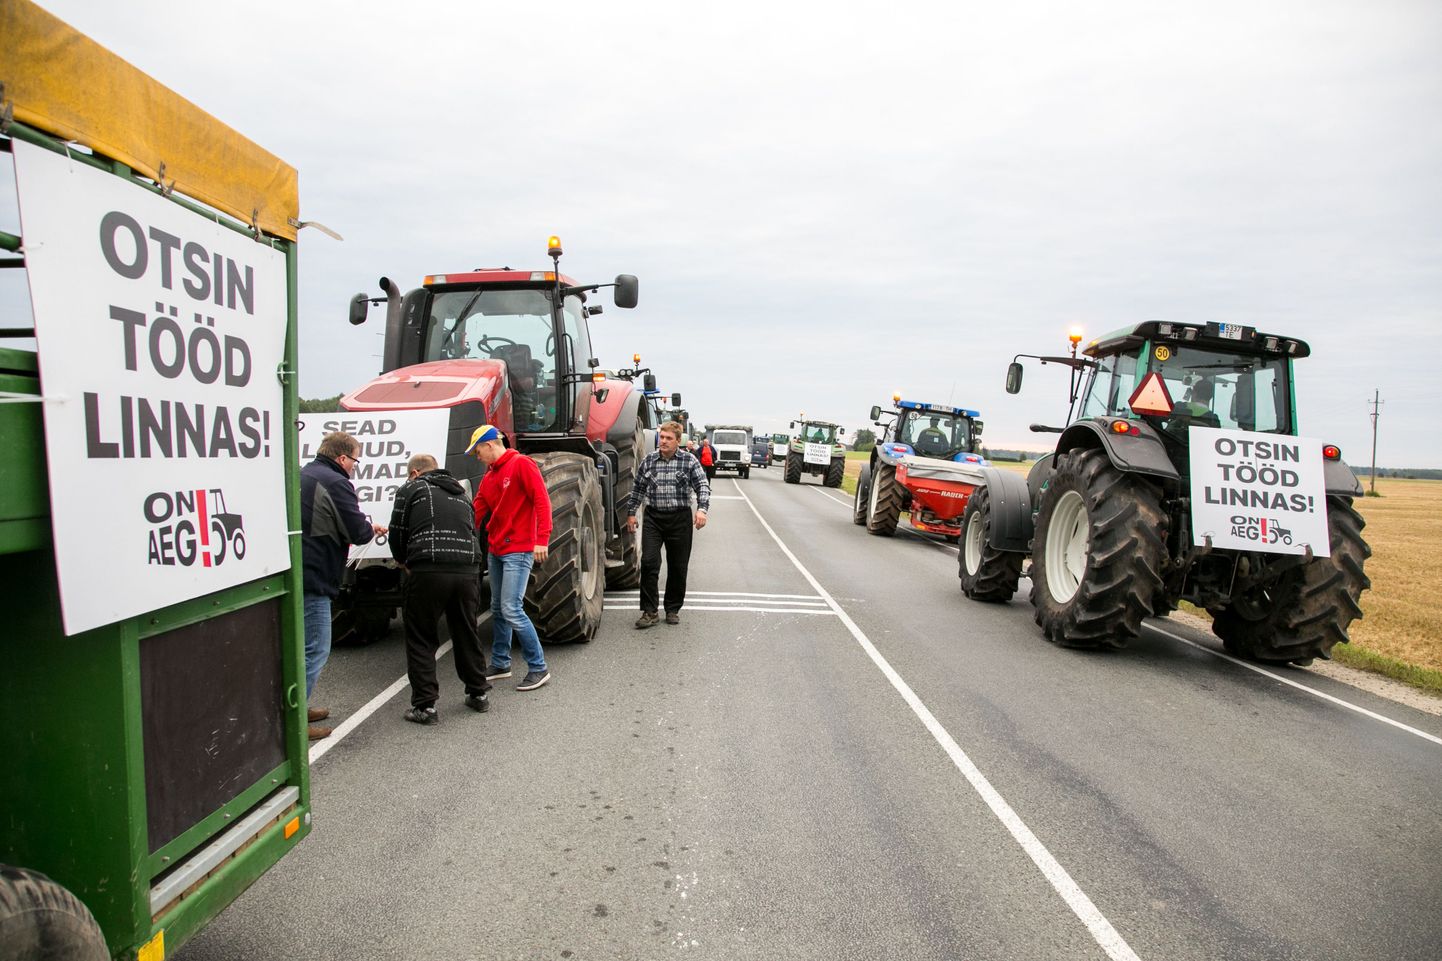 Põllumehed alustasid oma protestikäiku Tallinna